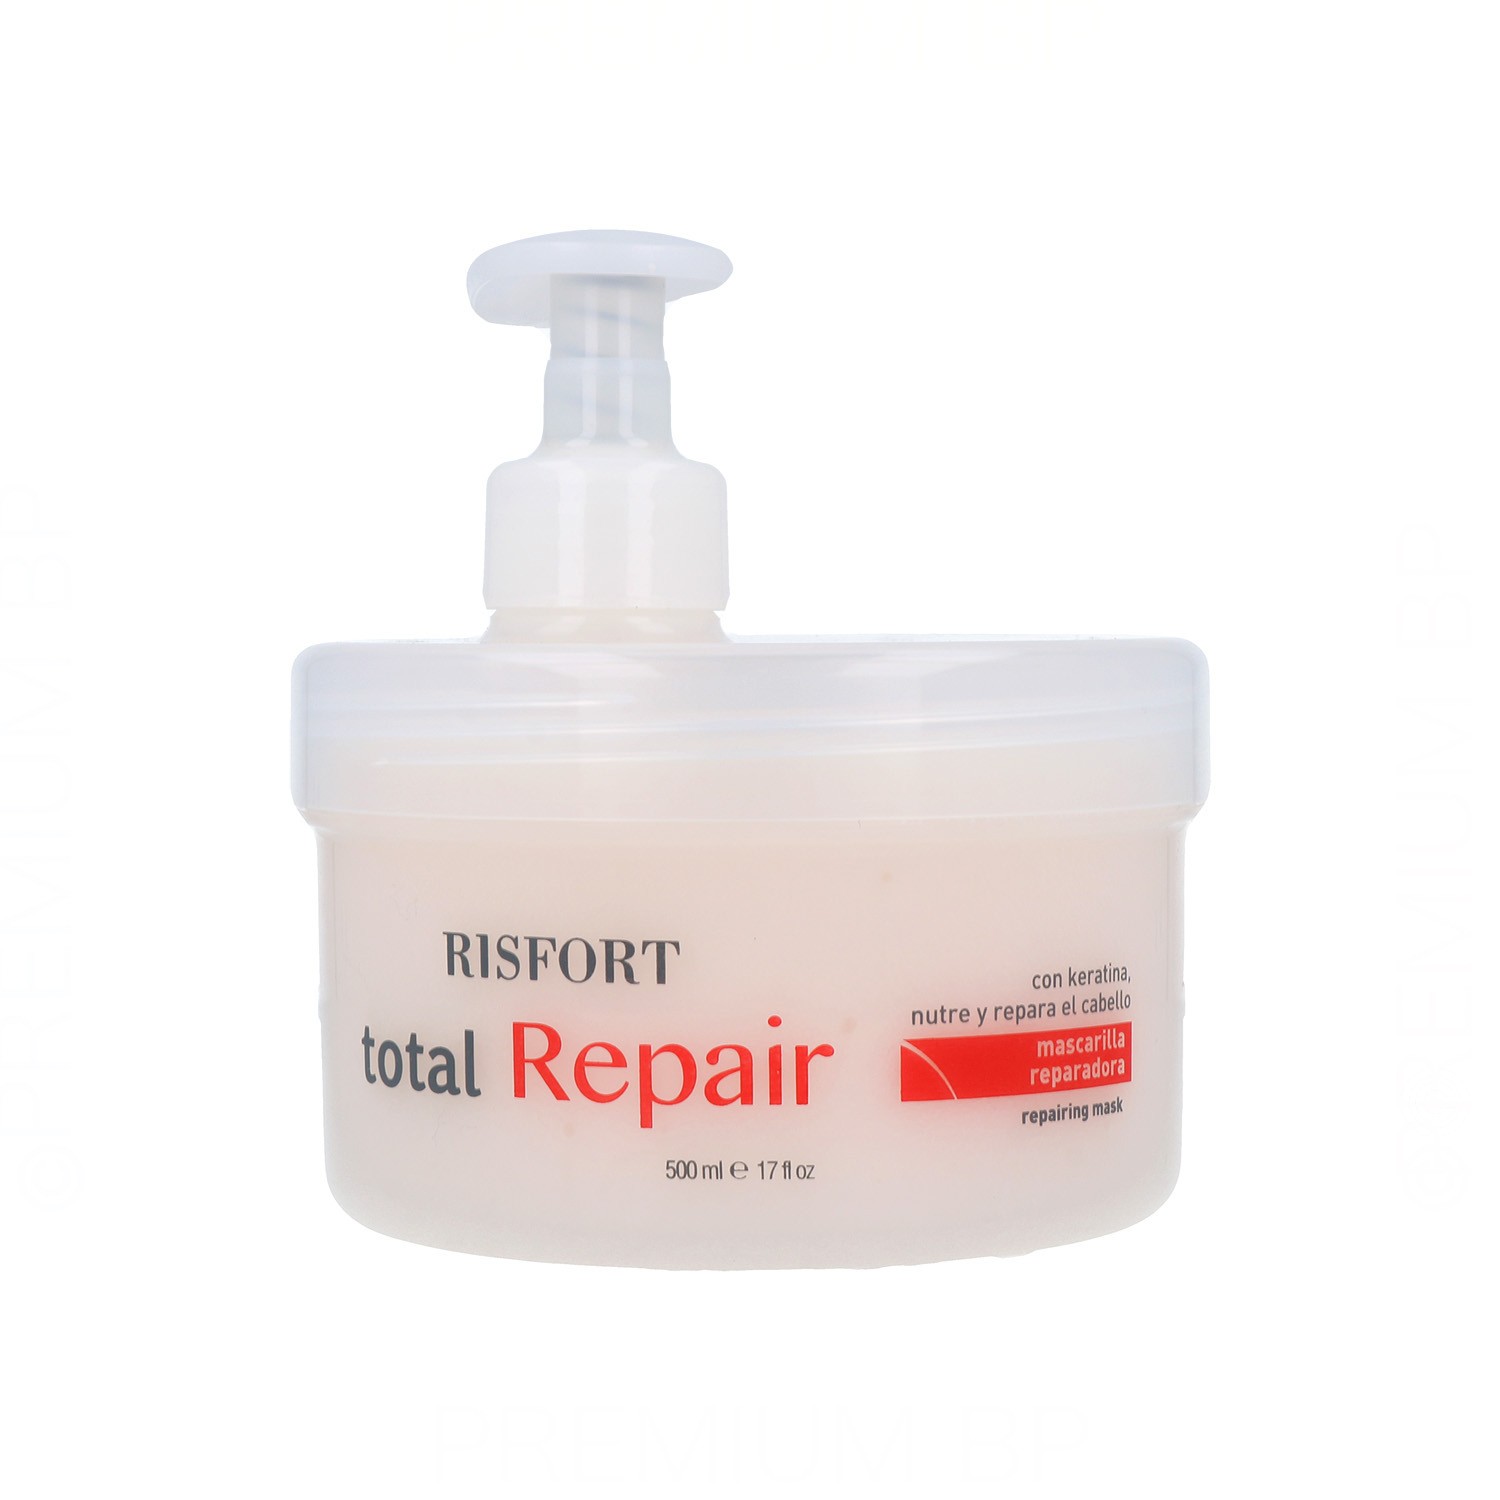 Risfort Total Repair Mask 500 ml